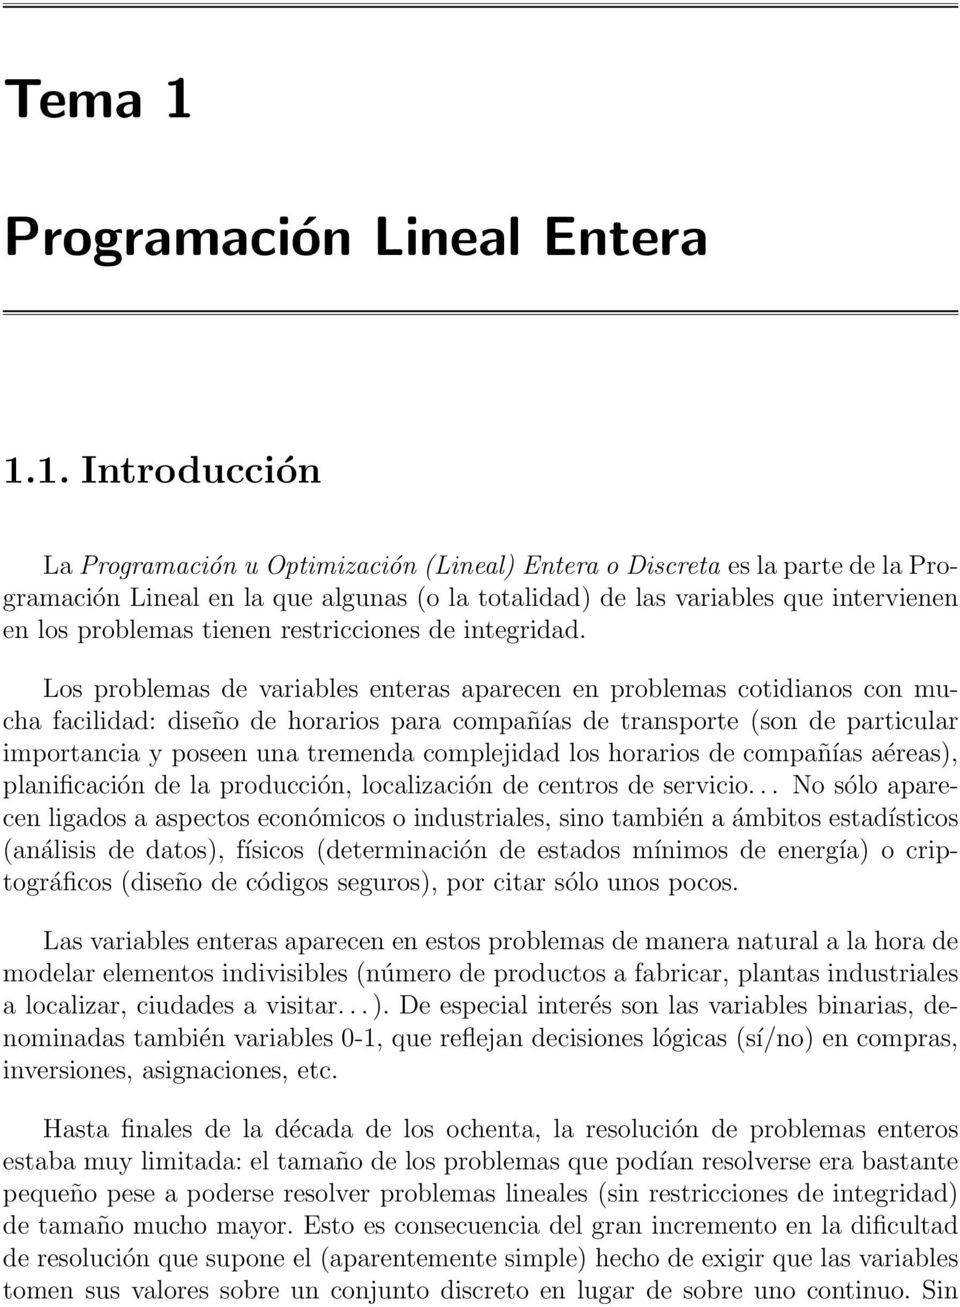 1. Introducción La Programación u Optimización (Lineal) Entera o Discreta es la parte de la Programación Lineal en la que algunas (o la totalidad) de las variables que intervienen en los problemas